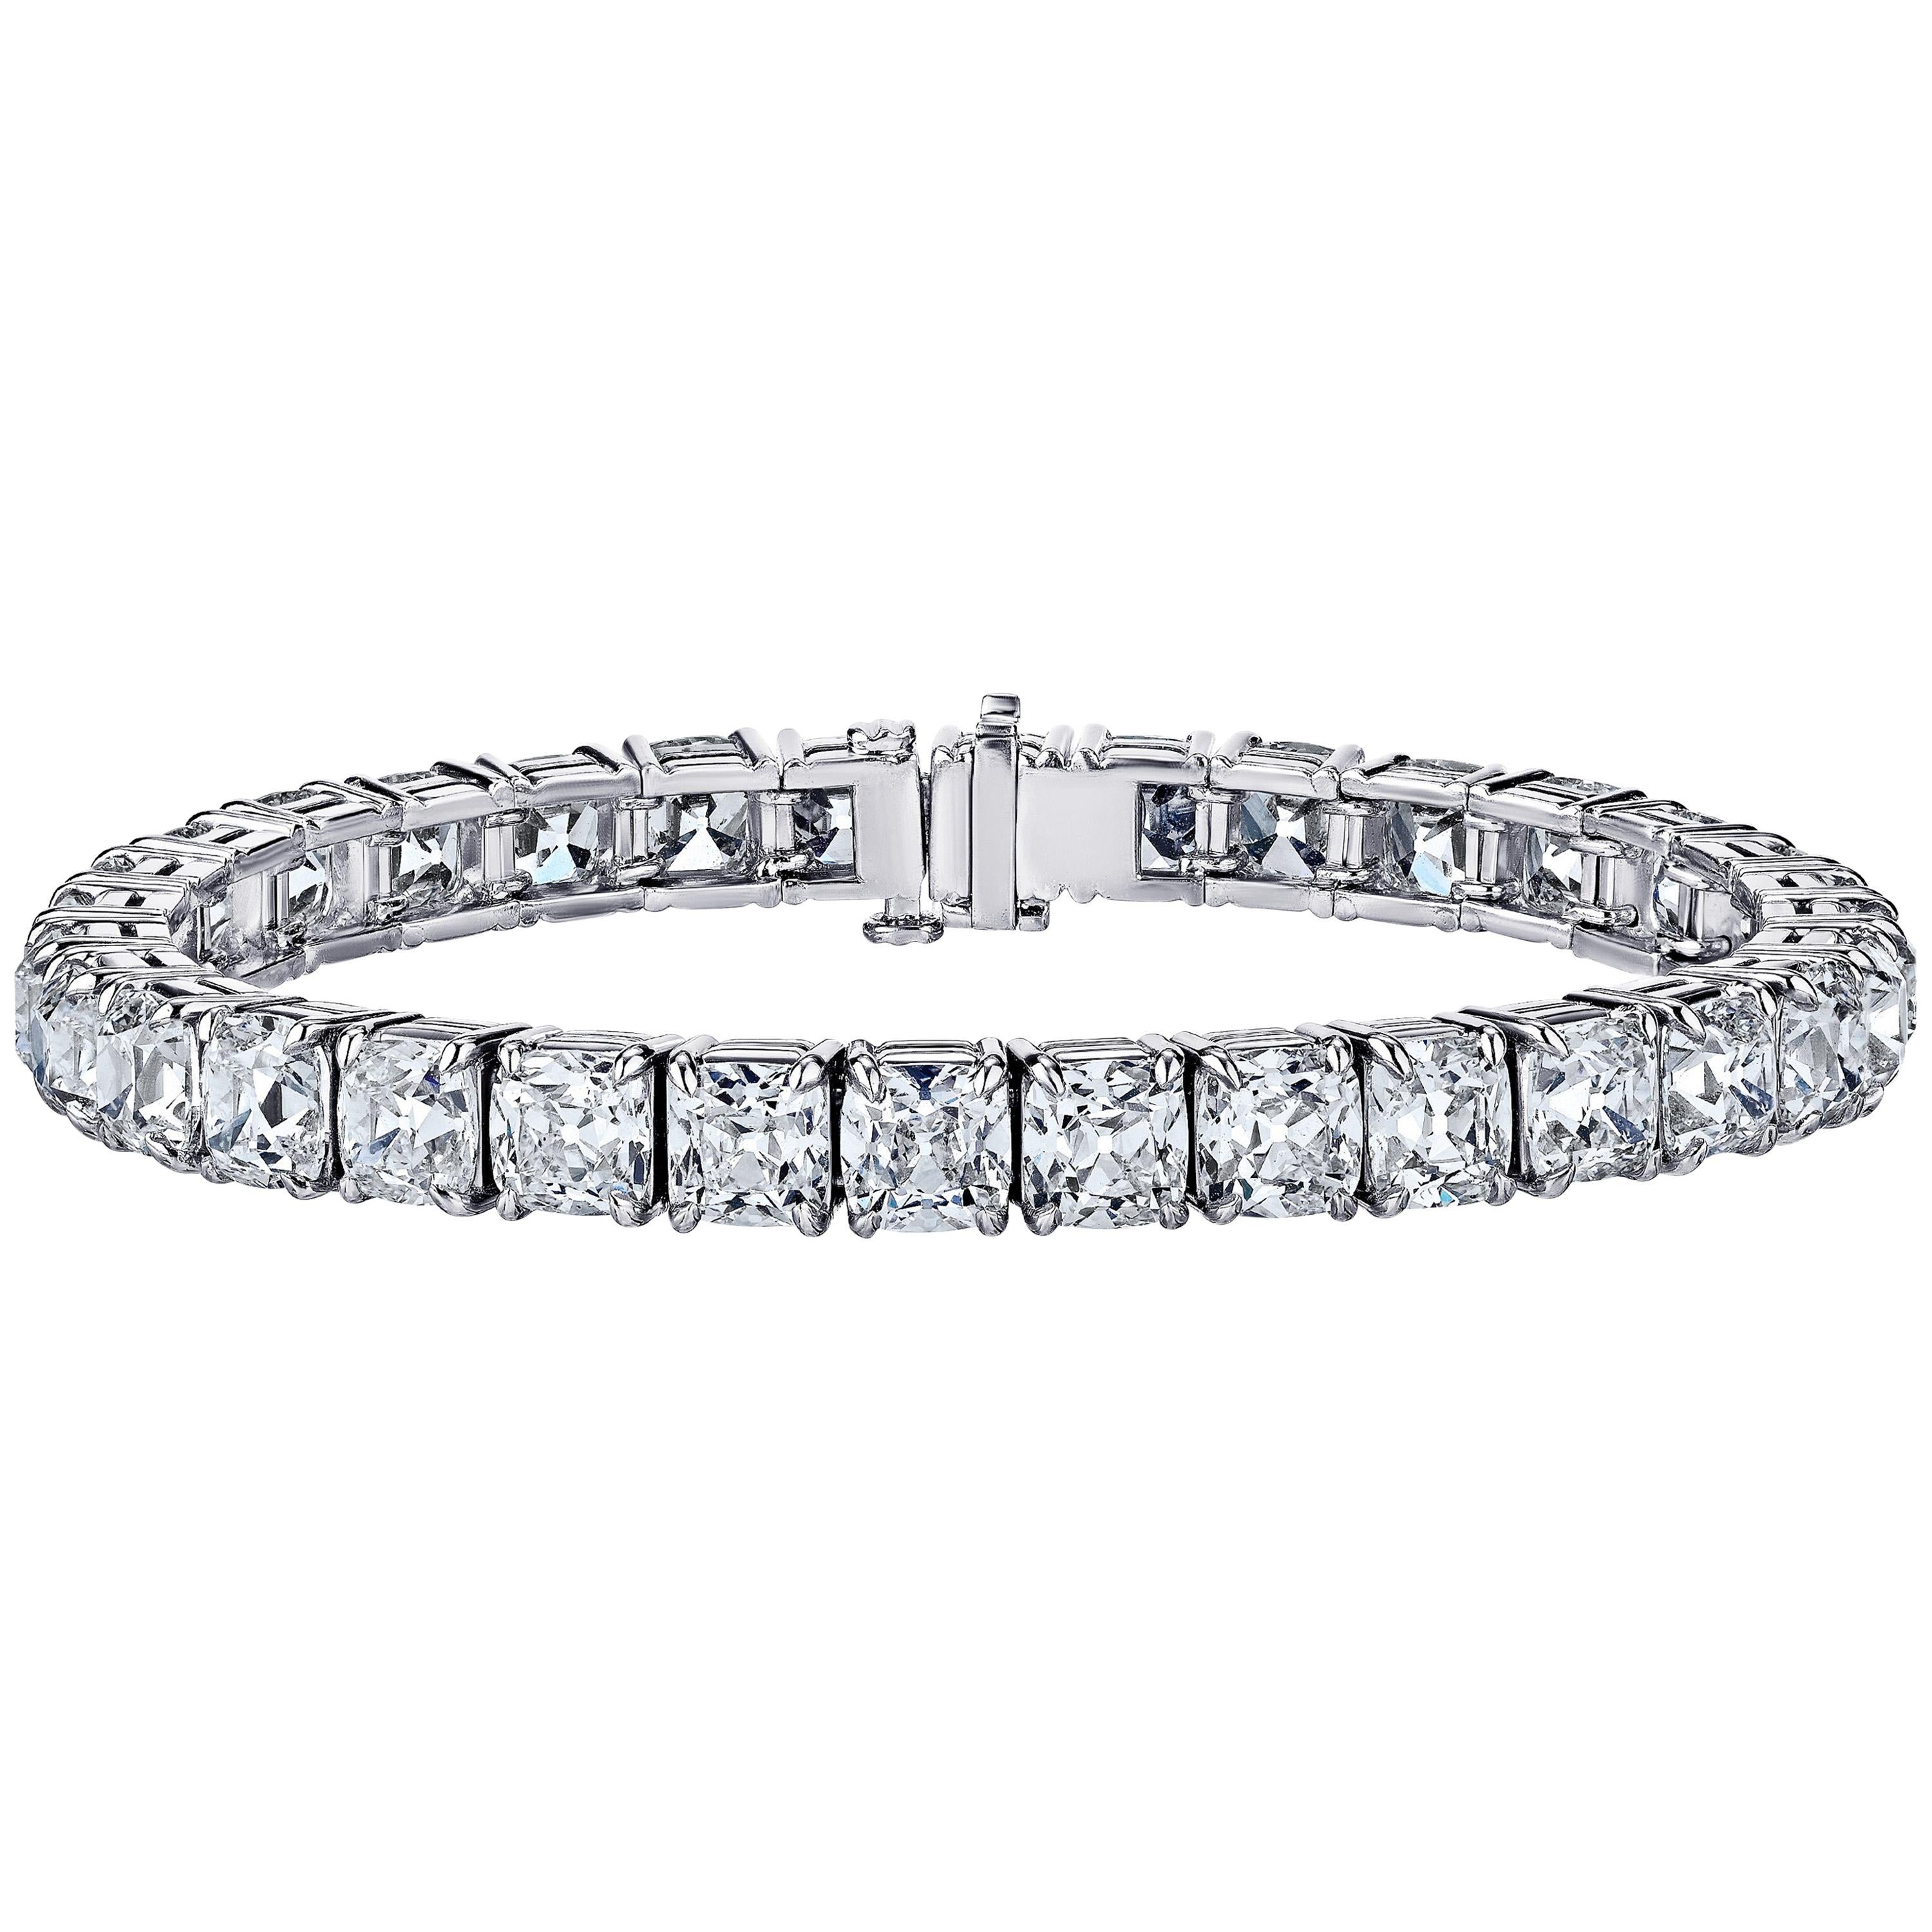 Bracelet tennis en diamants taille coussin de 33,07 carats certifiés GIA par Louis Newman